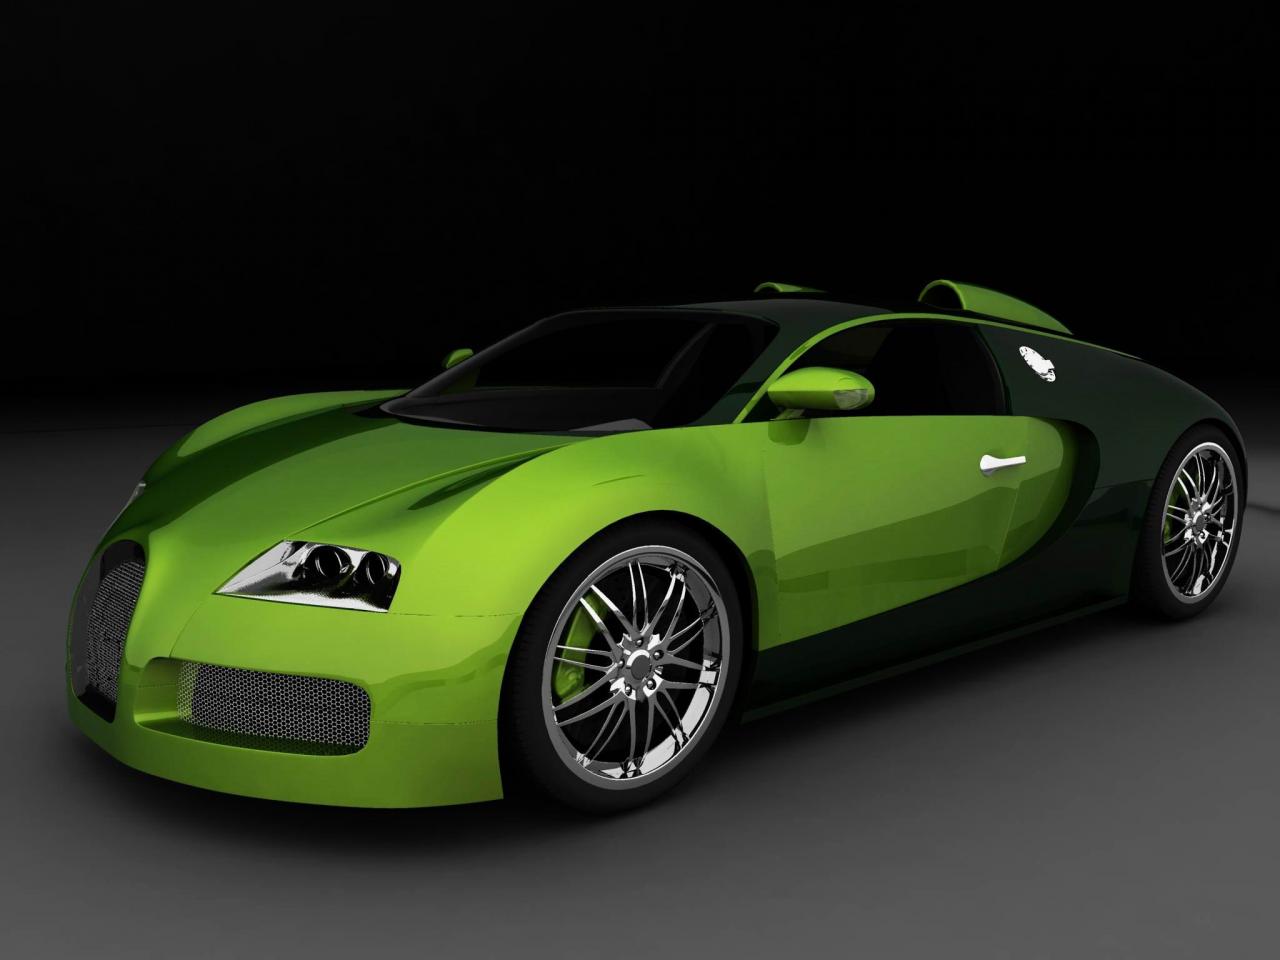 Green Bugatti Veyron Wallpaper Jpg